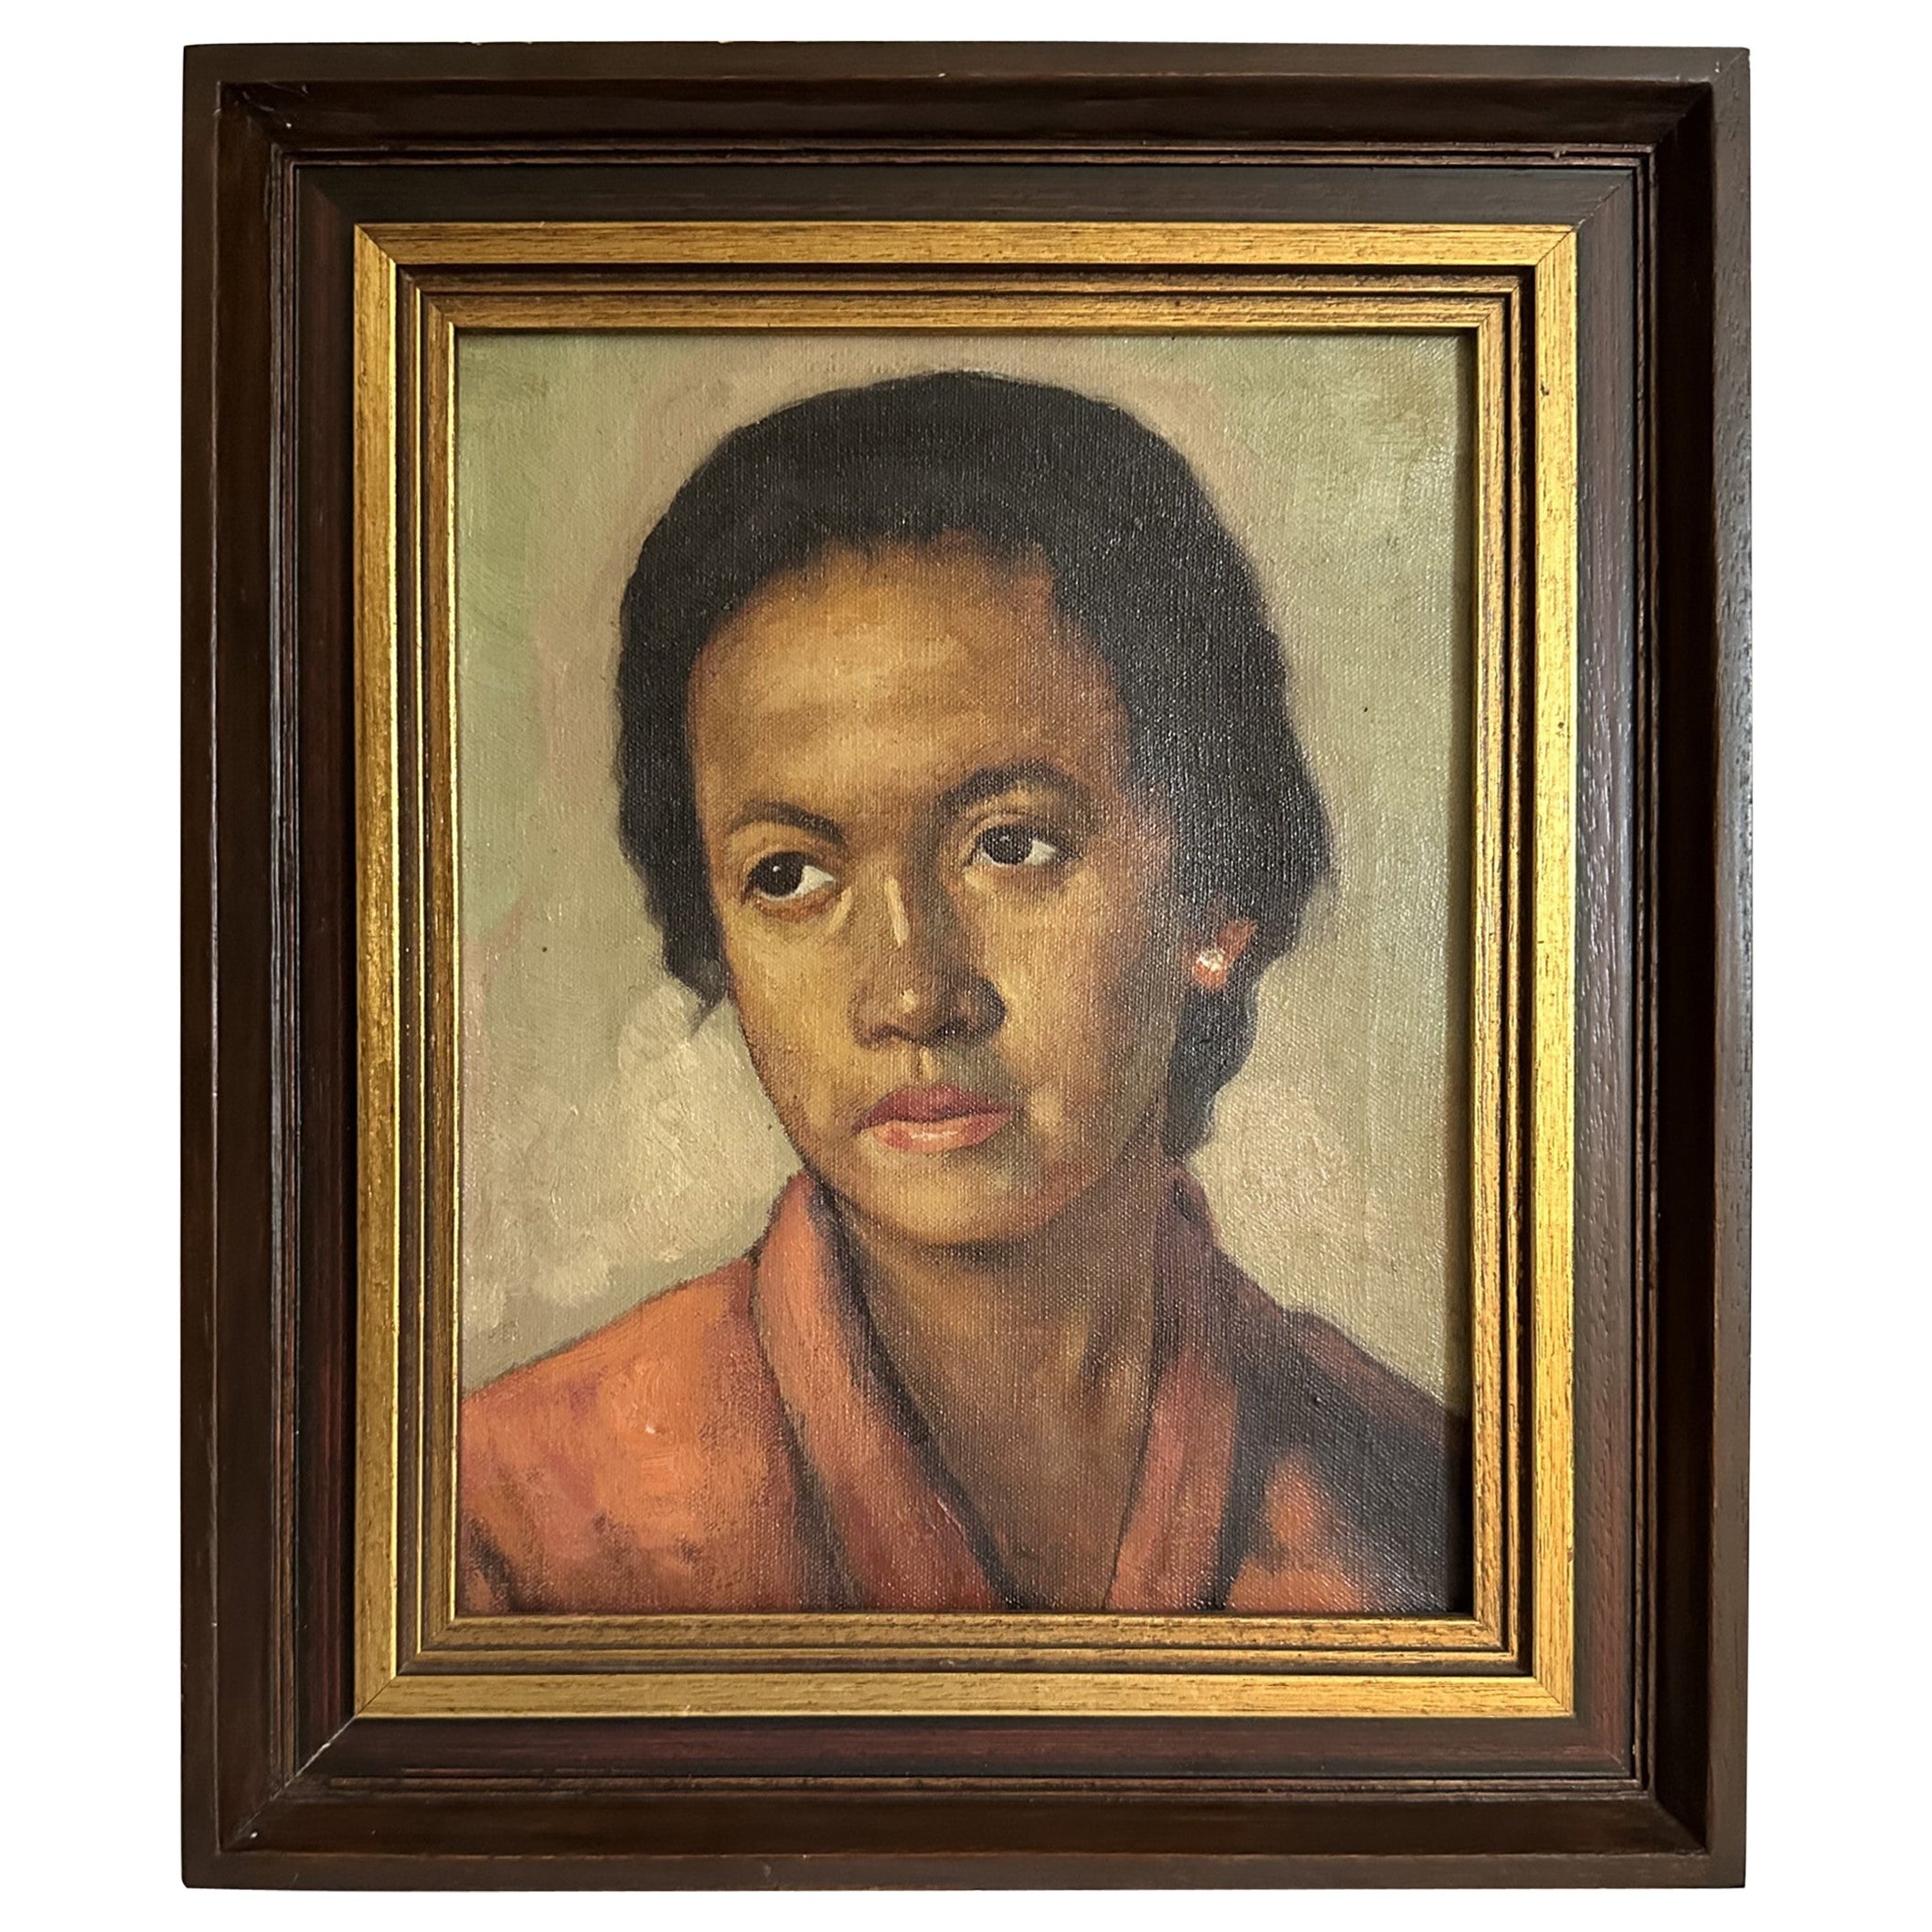 Portrait réaliste socialiste des femmes de couleur de l'école Ashcan du début du 20e siècle